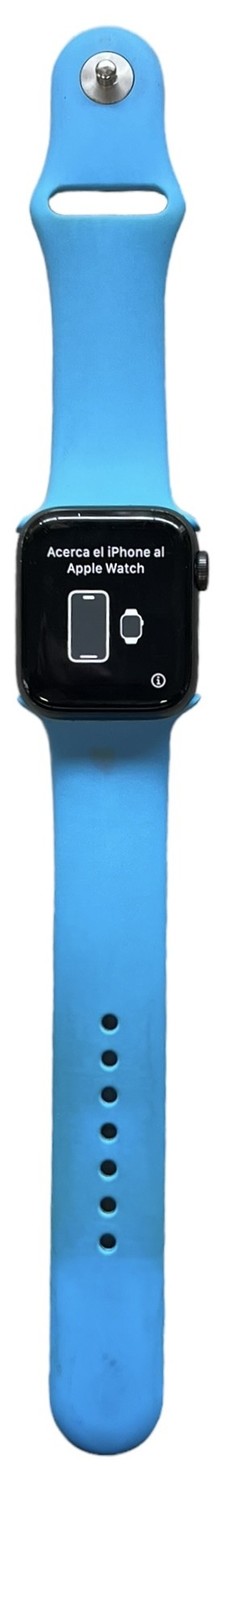 Apple Smart watch Myee2ll/a 388457 - $149.00